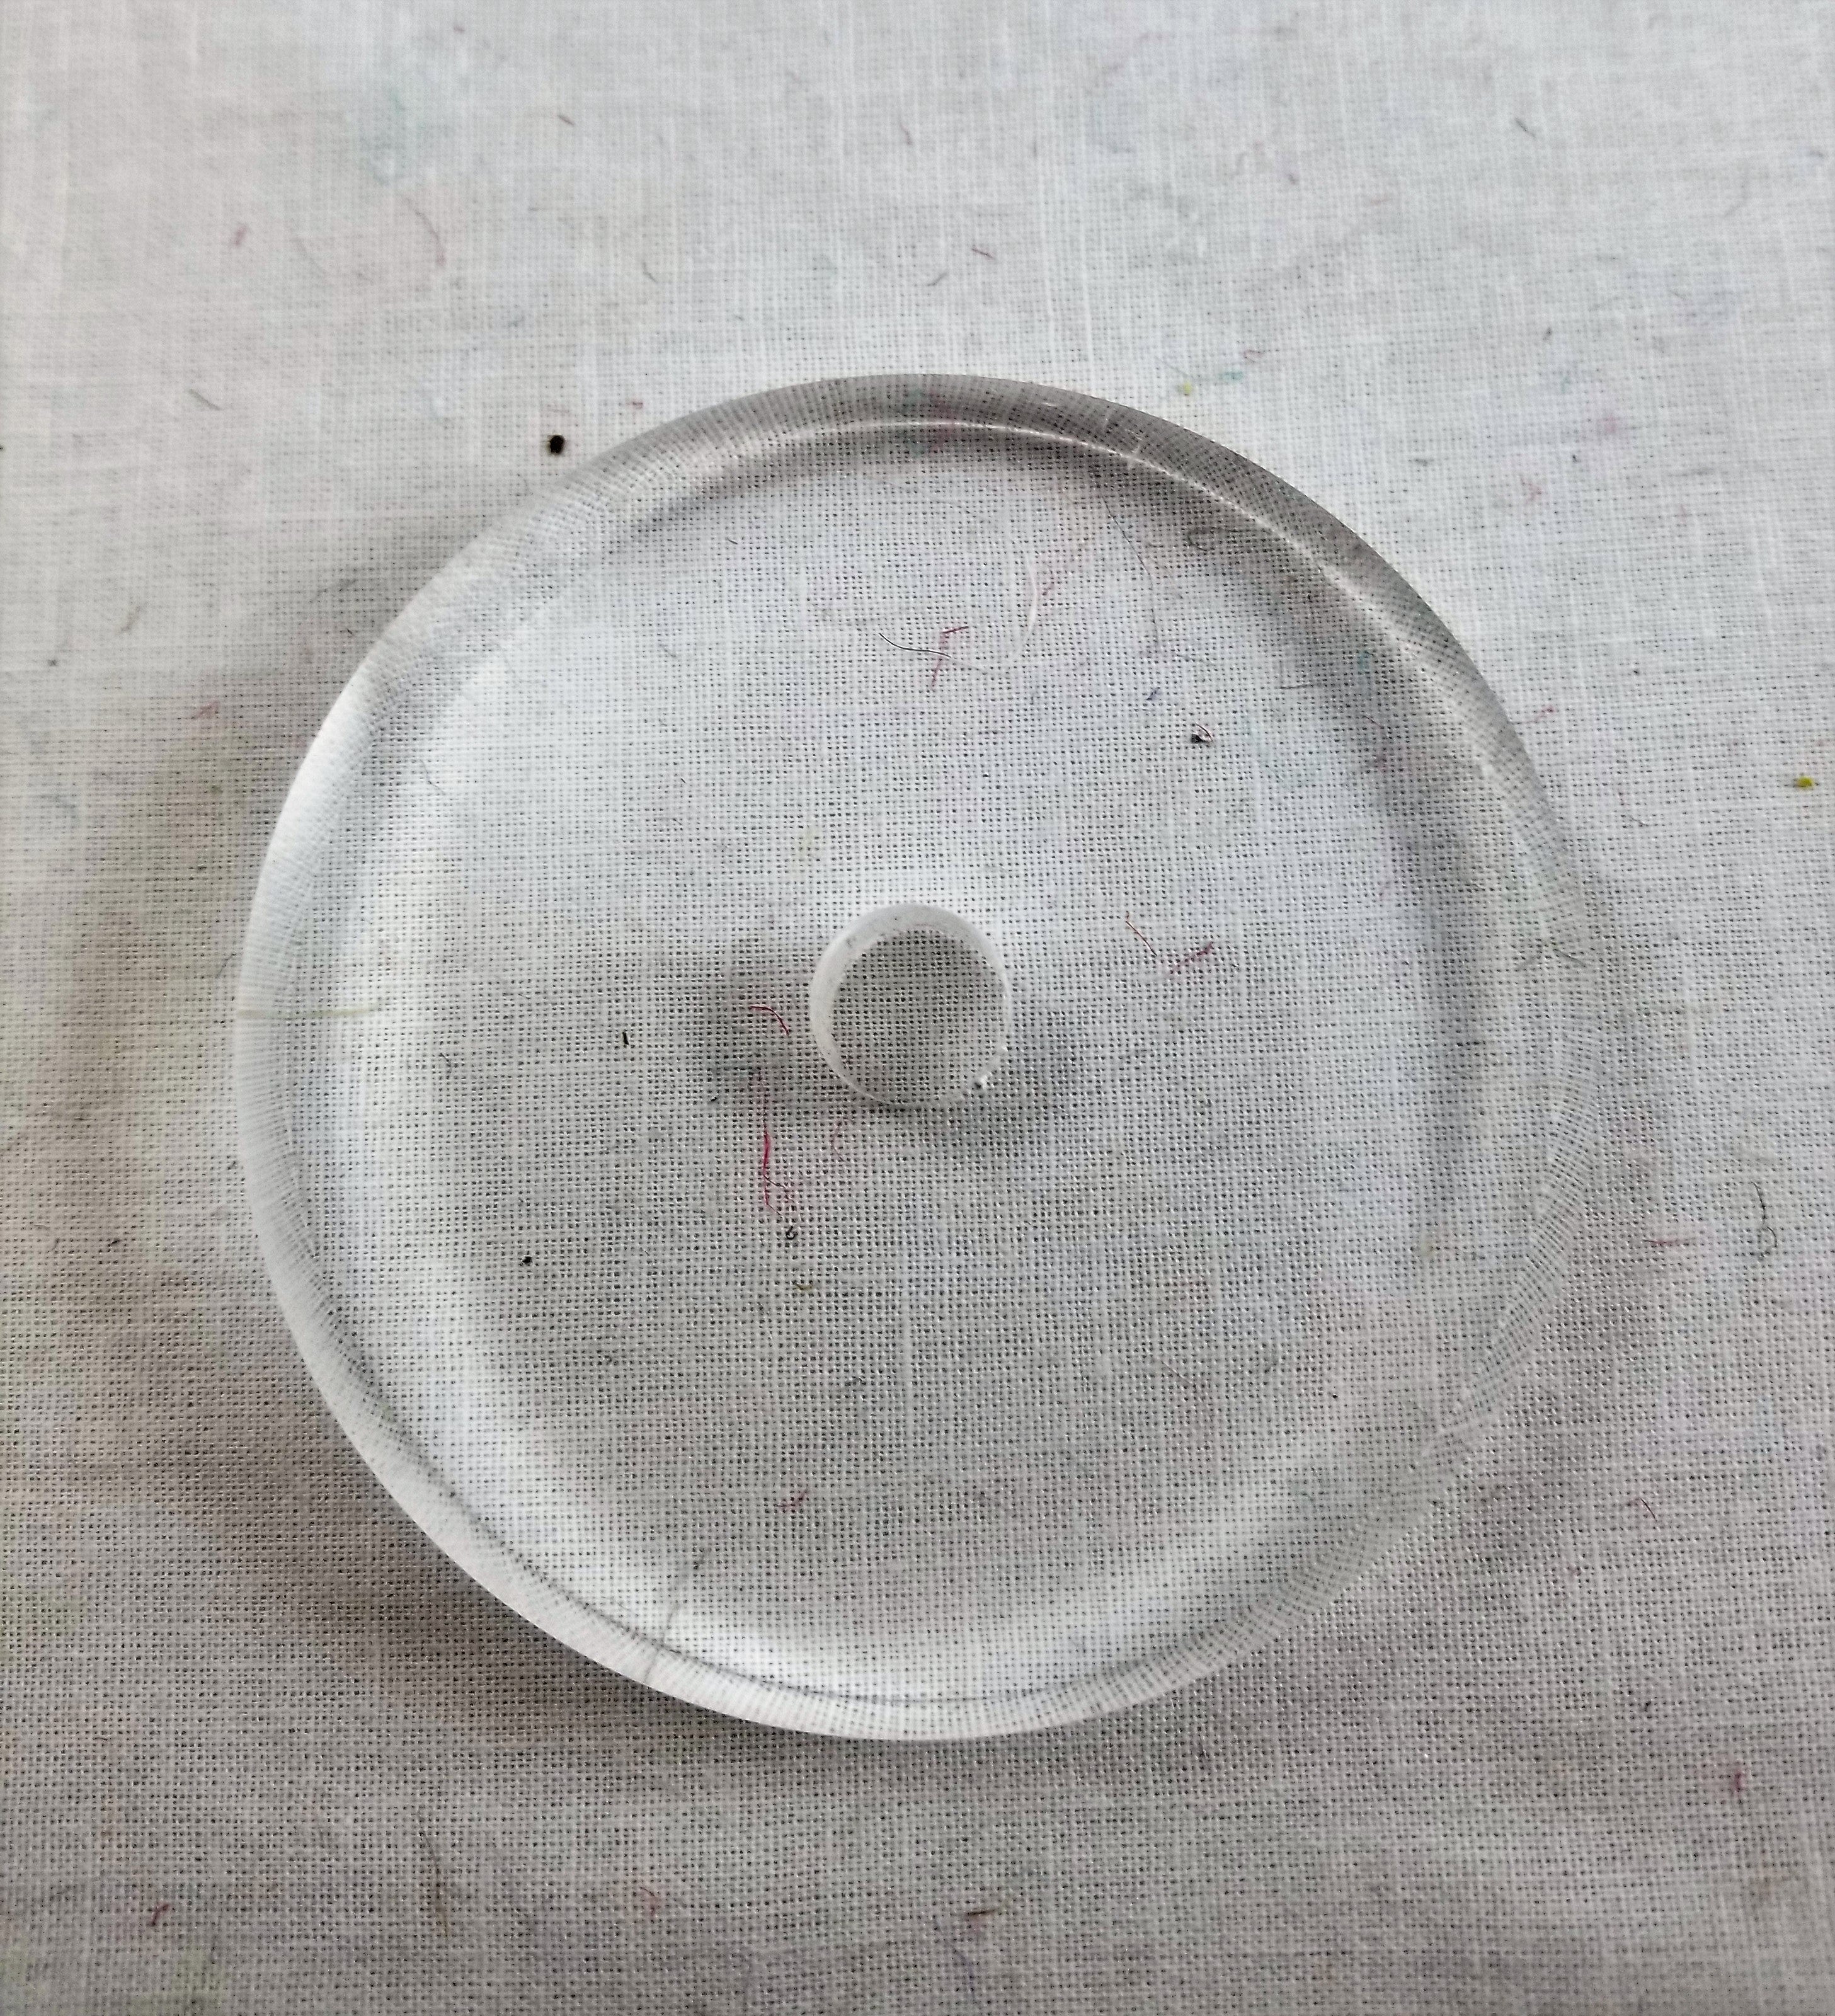 3" dia acrylic ring, ht 1/2", 7/16" hole